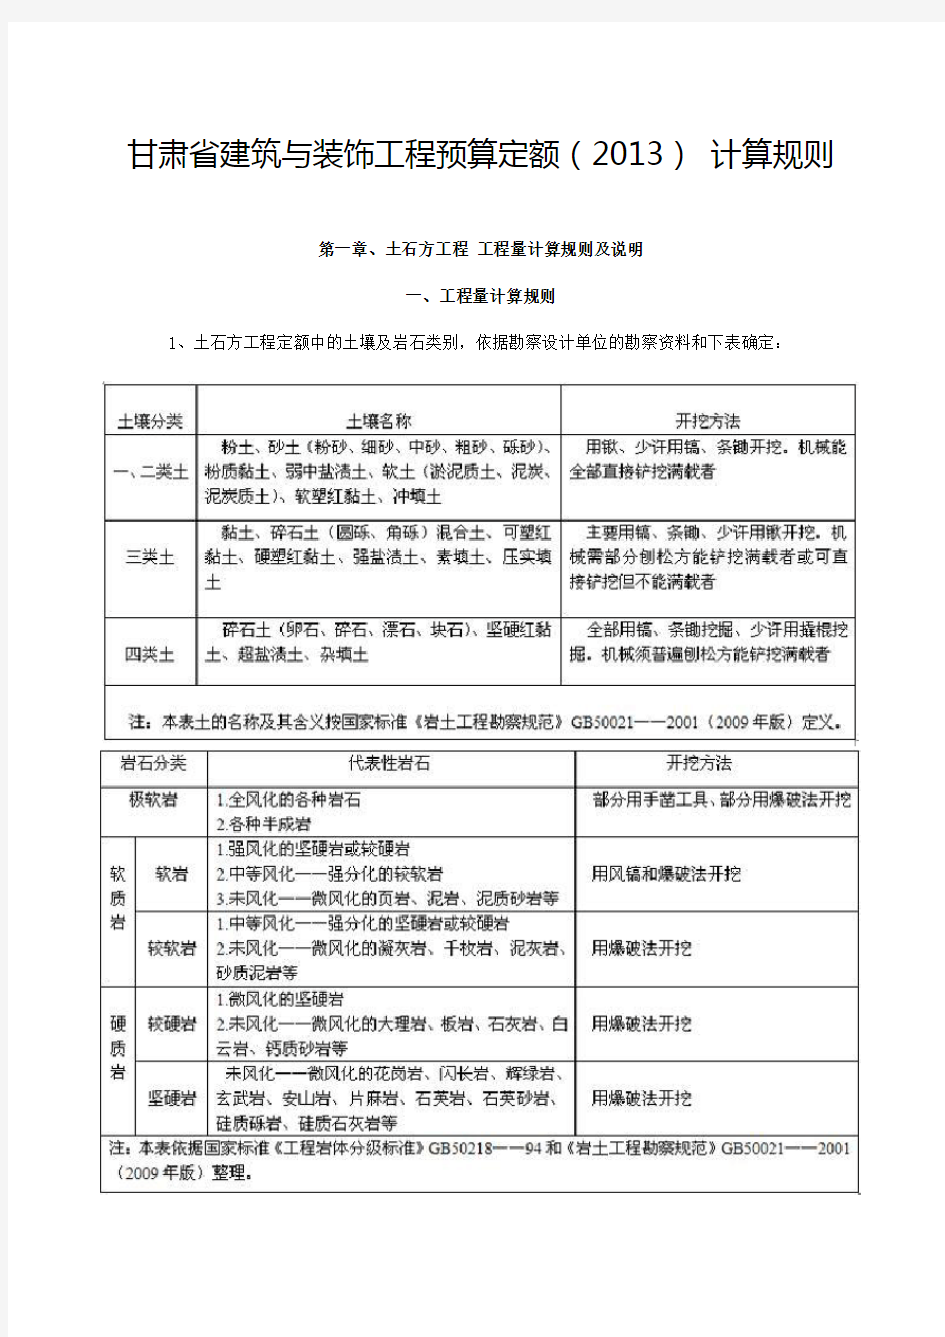 2013年甘肃省建筑与装饰工程预算定额说明(含章节说明)